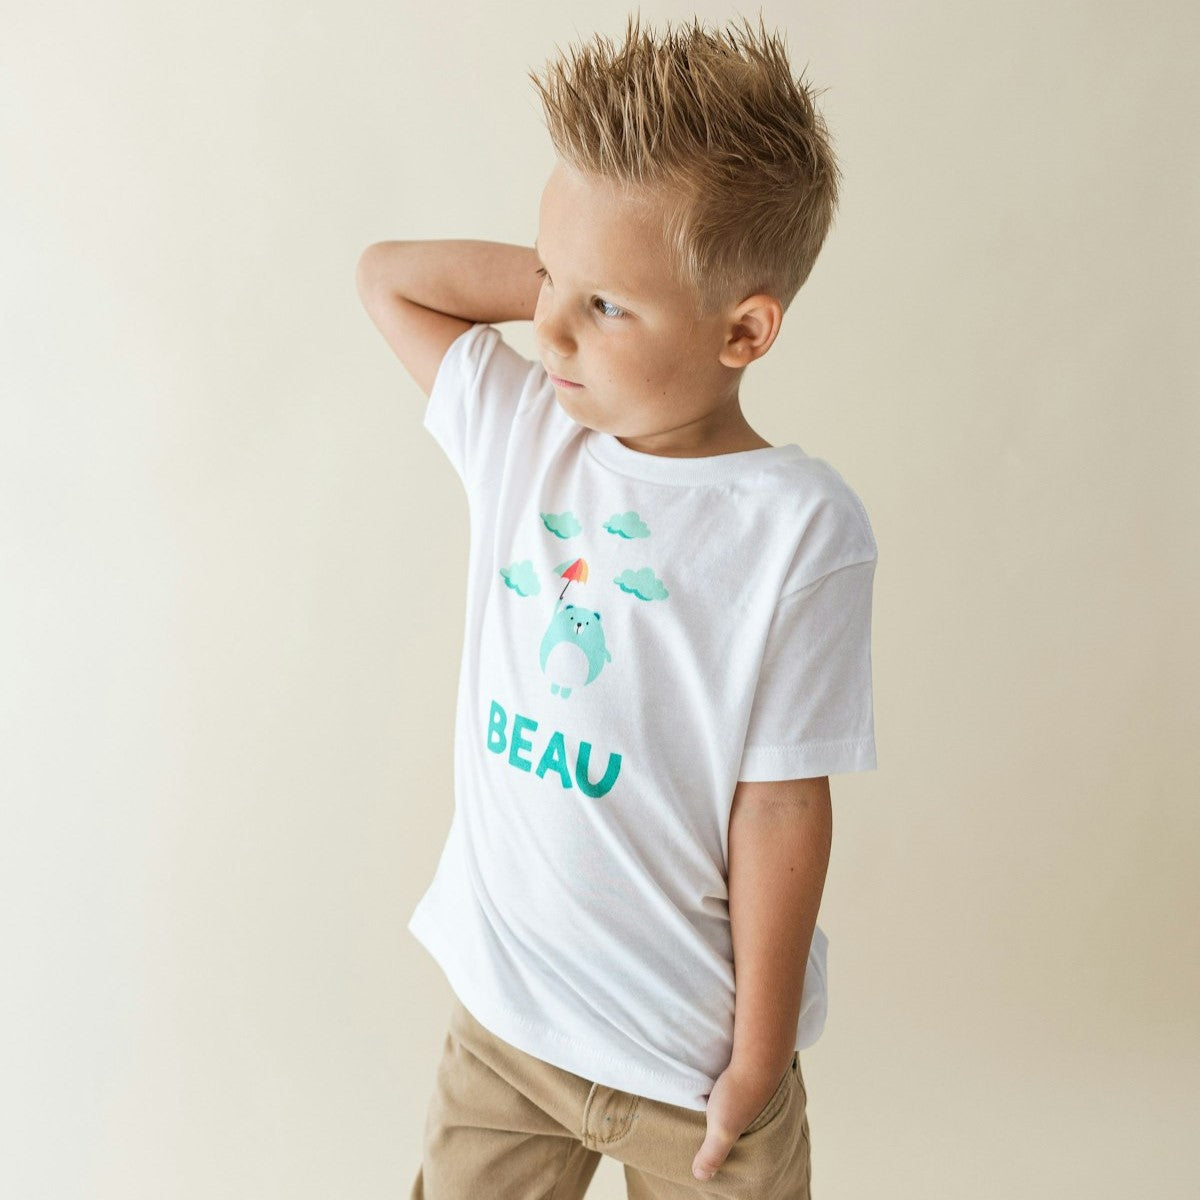 boy wearing a personalized kids puddle pals shirt